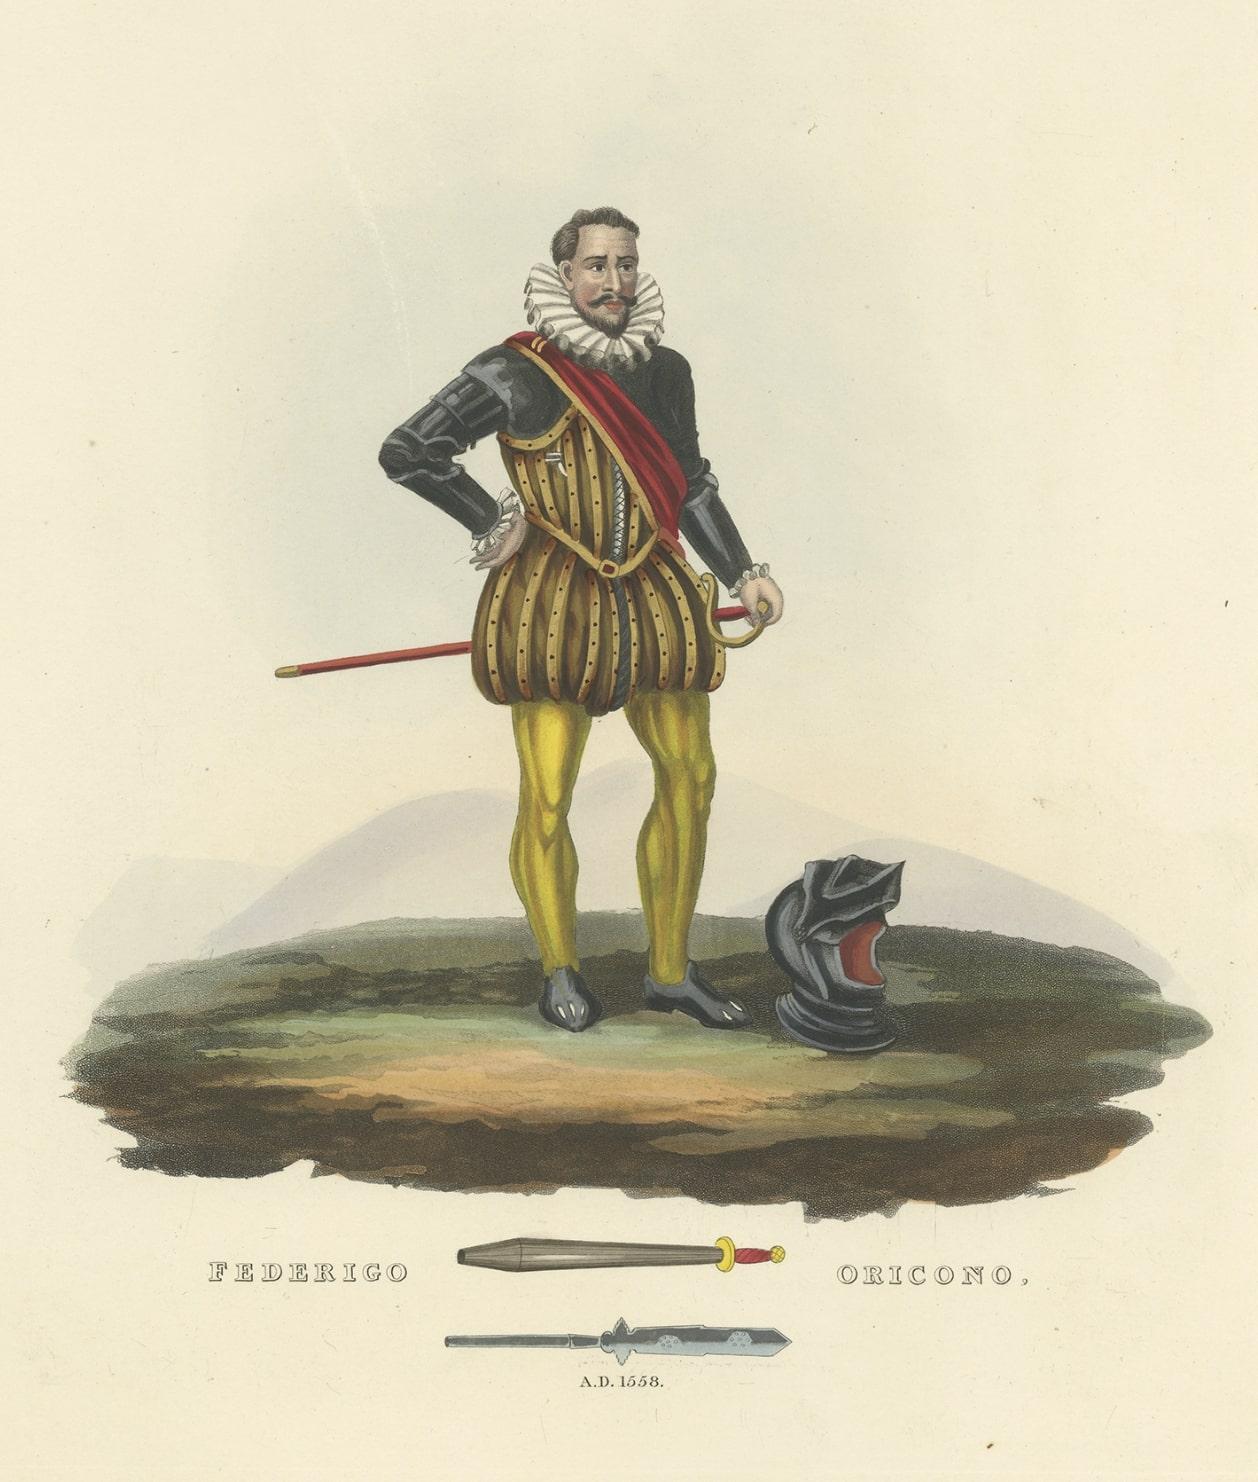 Paper Antique Print of Federigo Oricono, Tournament Baton and Voulge-Blade, 1842 For Sale